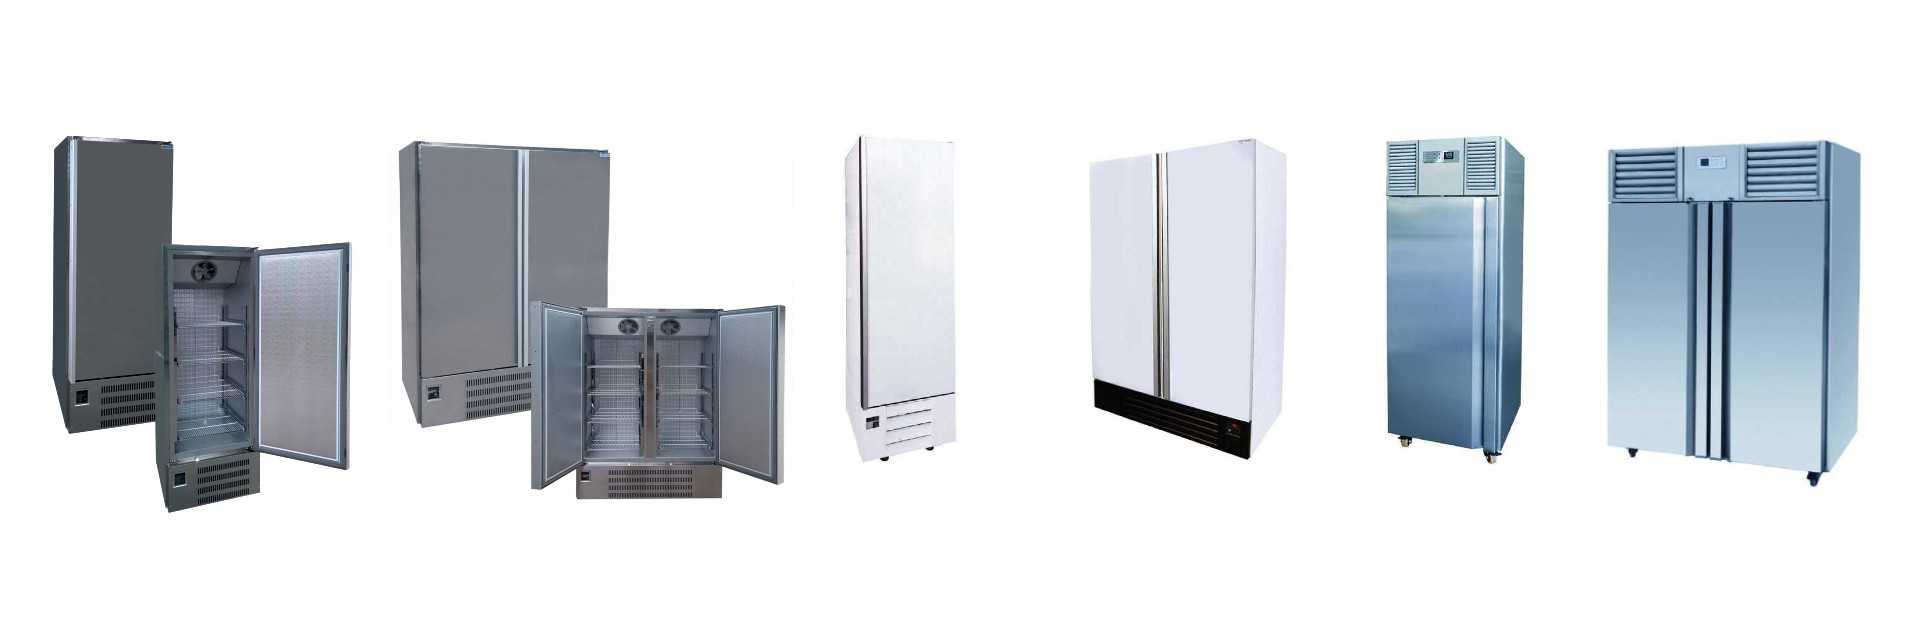 levelling upright fridges